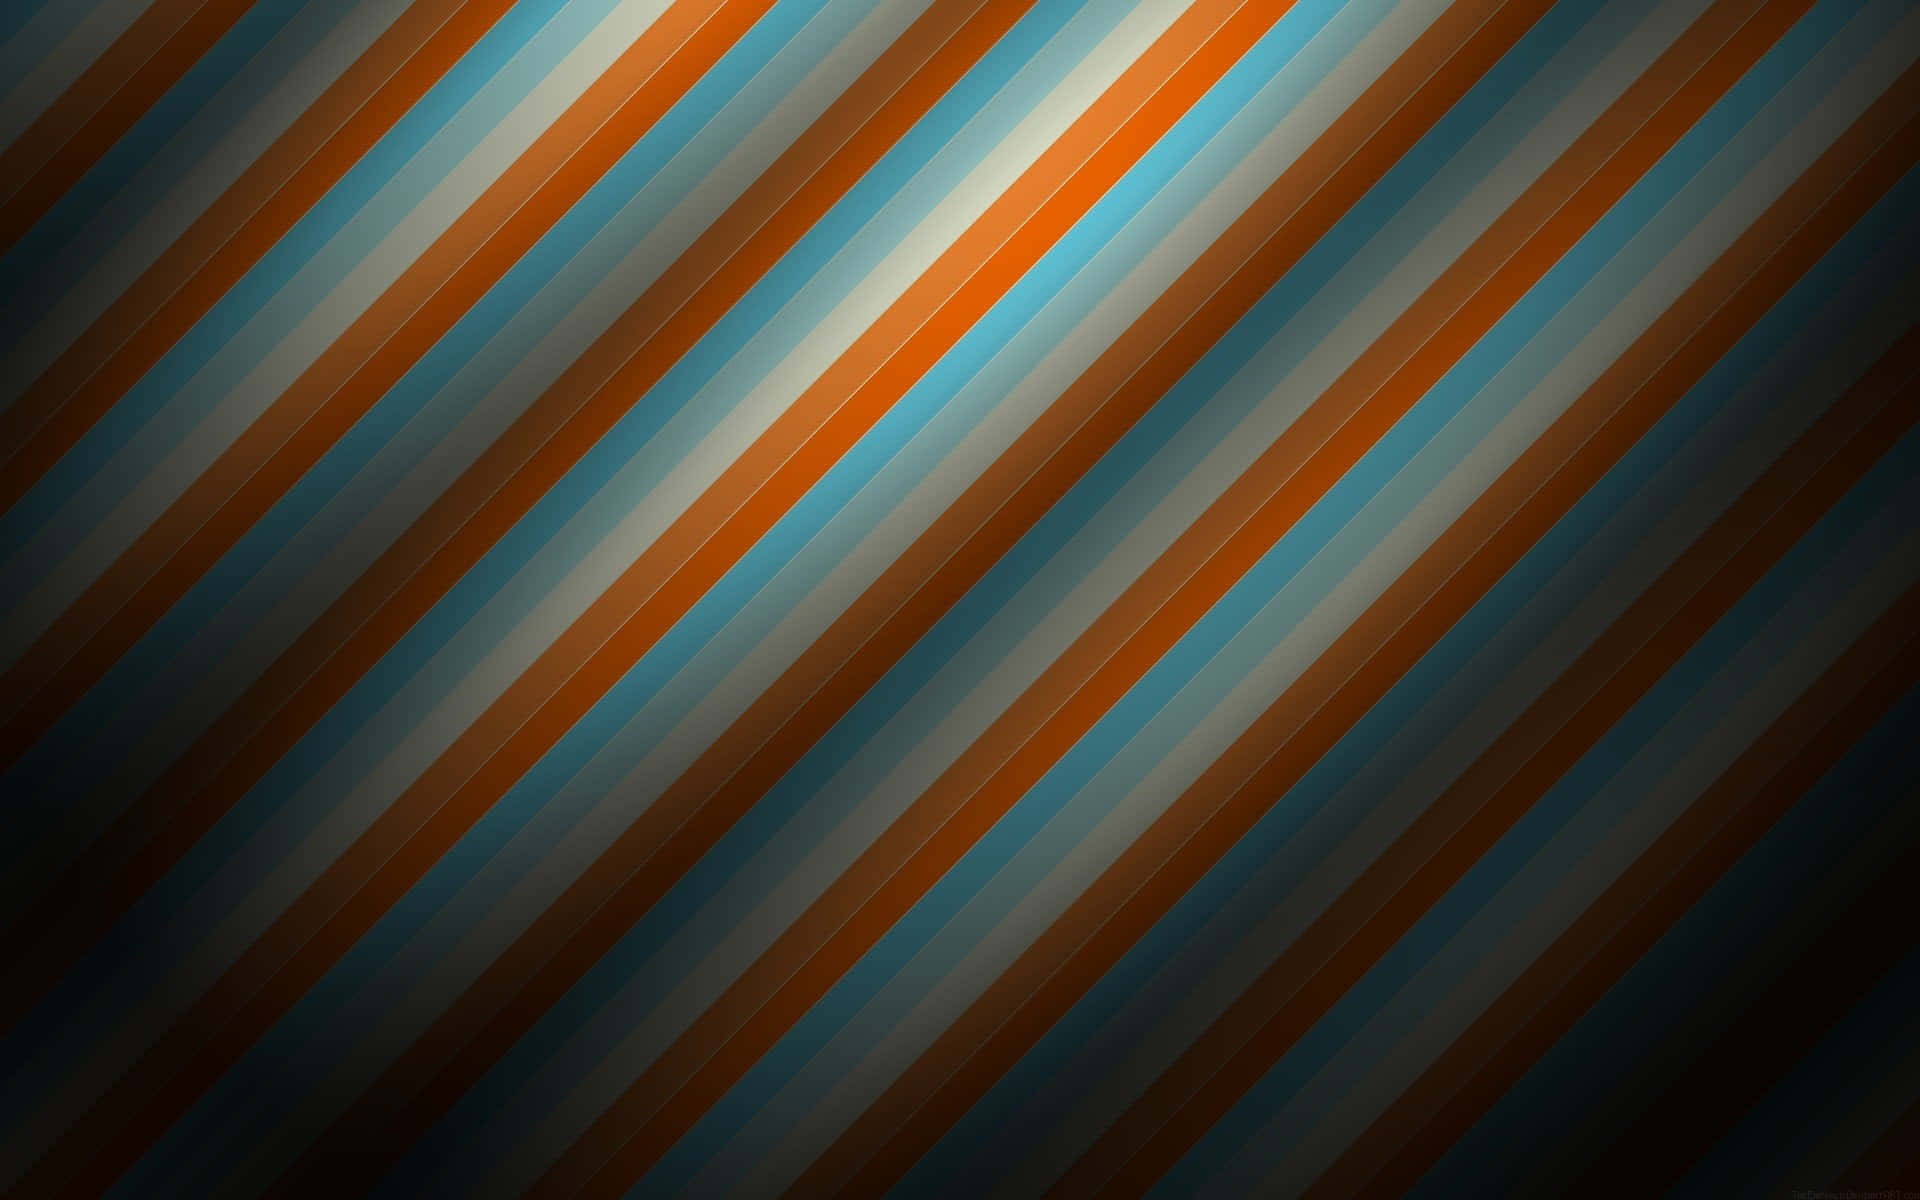 Et lyst og livligt udbrud af farver - orange og blå. Wallpaper